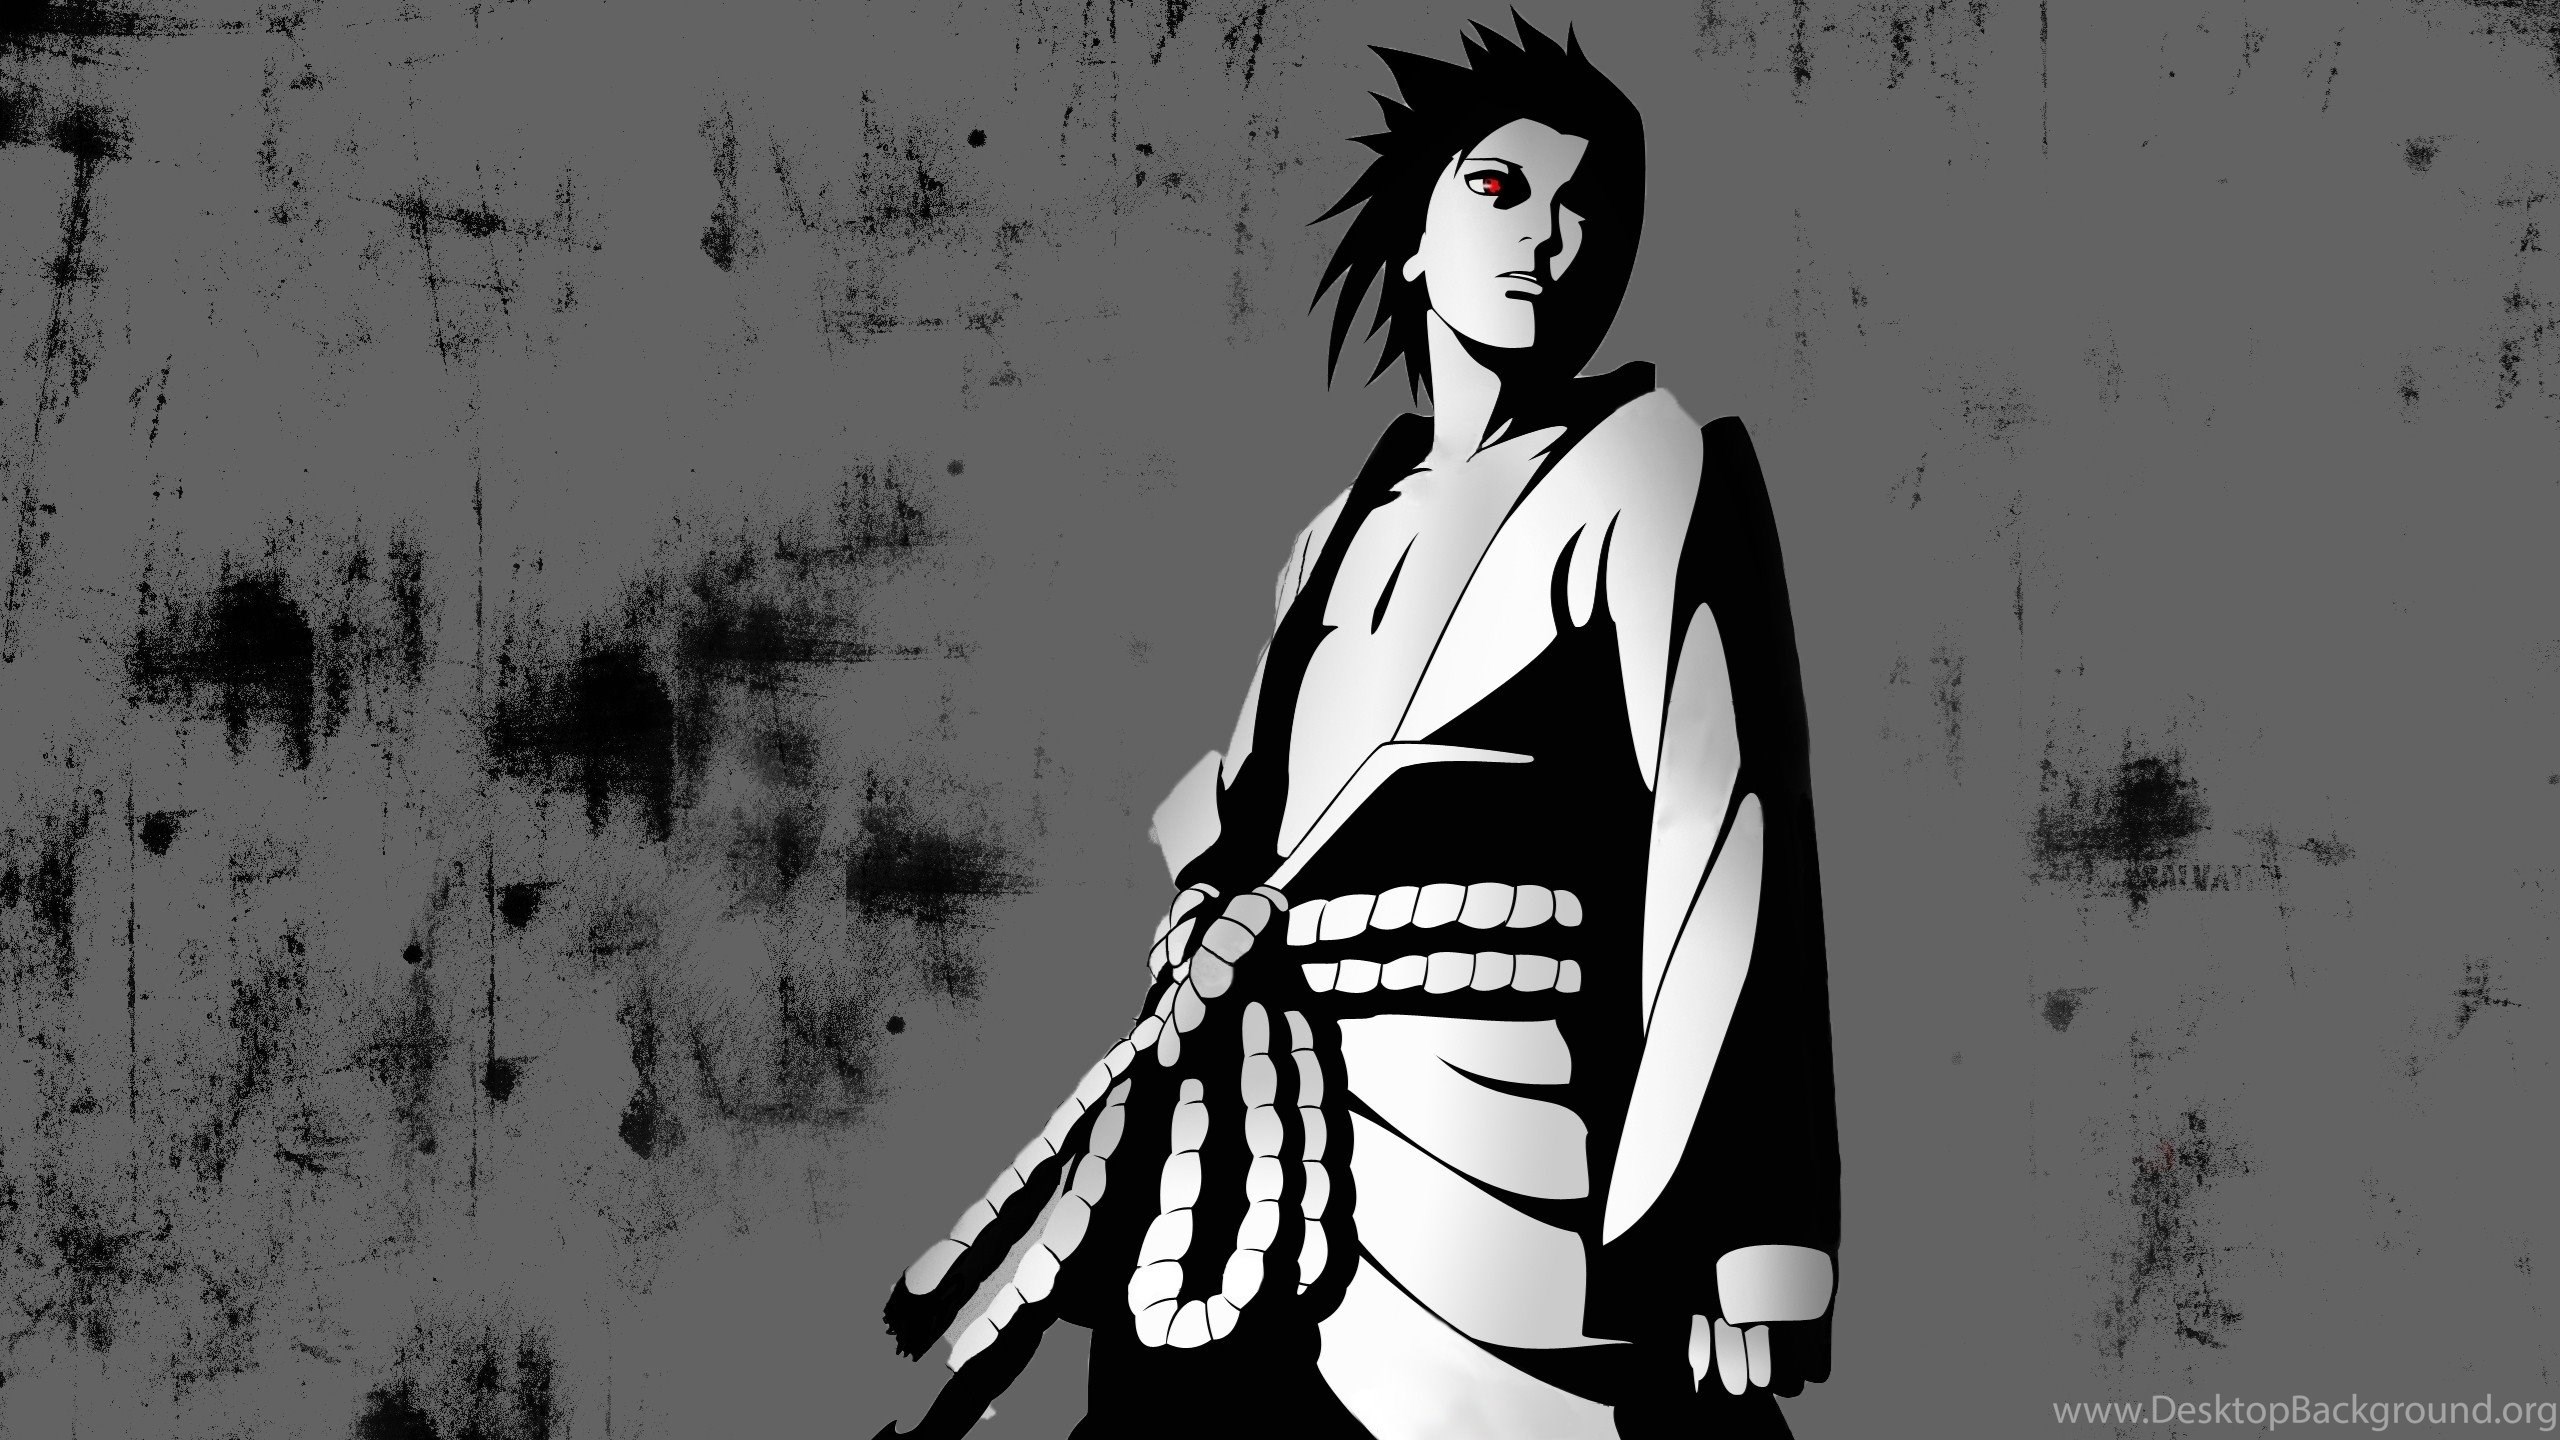 HD Black And White Art Sasuke Wallpaper Full HD Full Size. Desktop Background